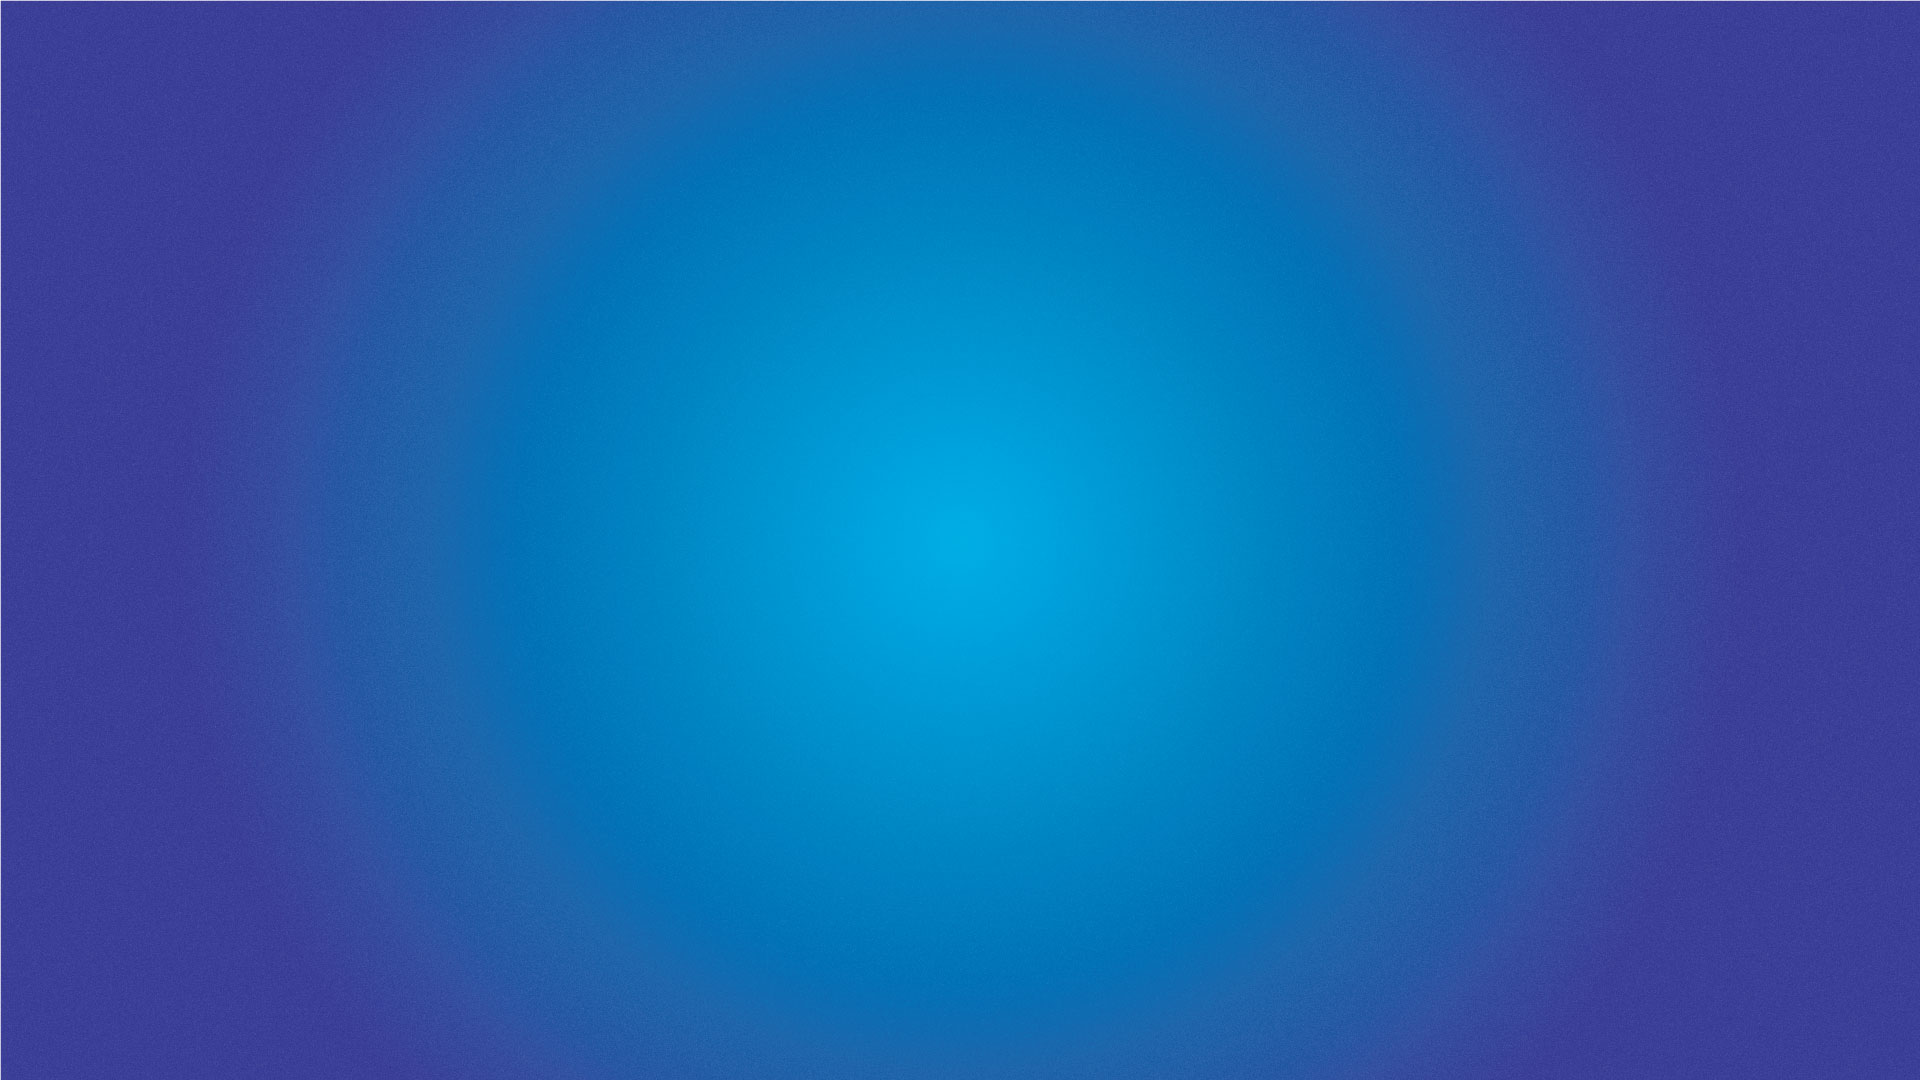 Nice hypnotic blue gradient background.